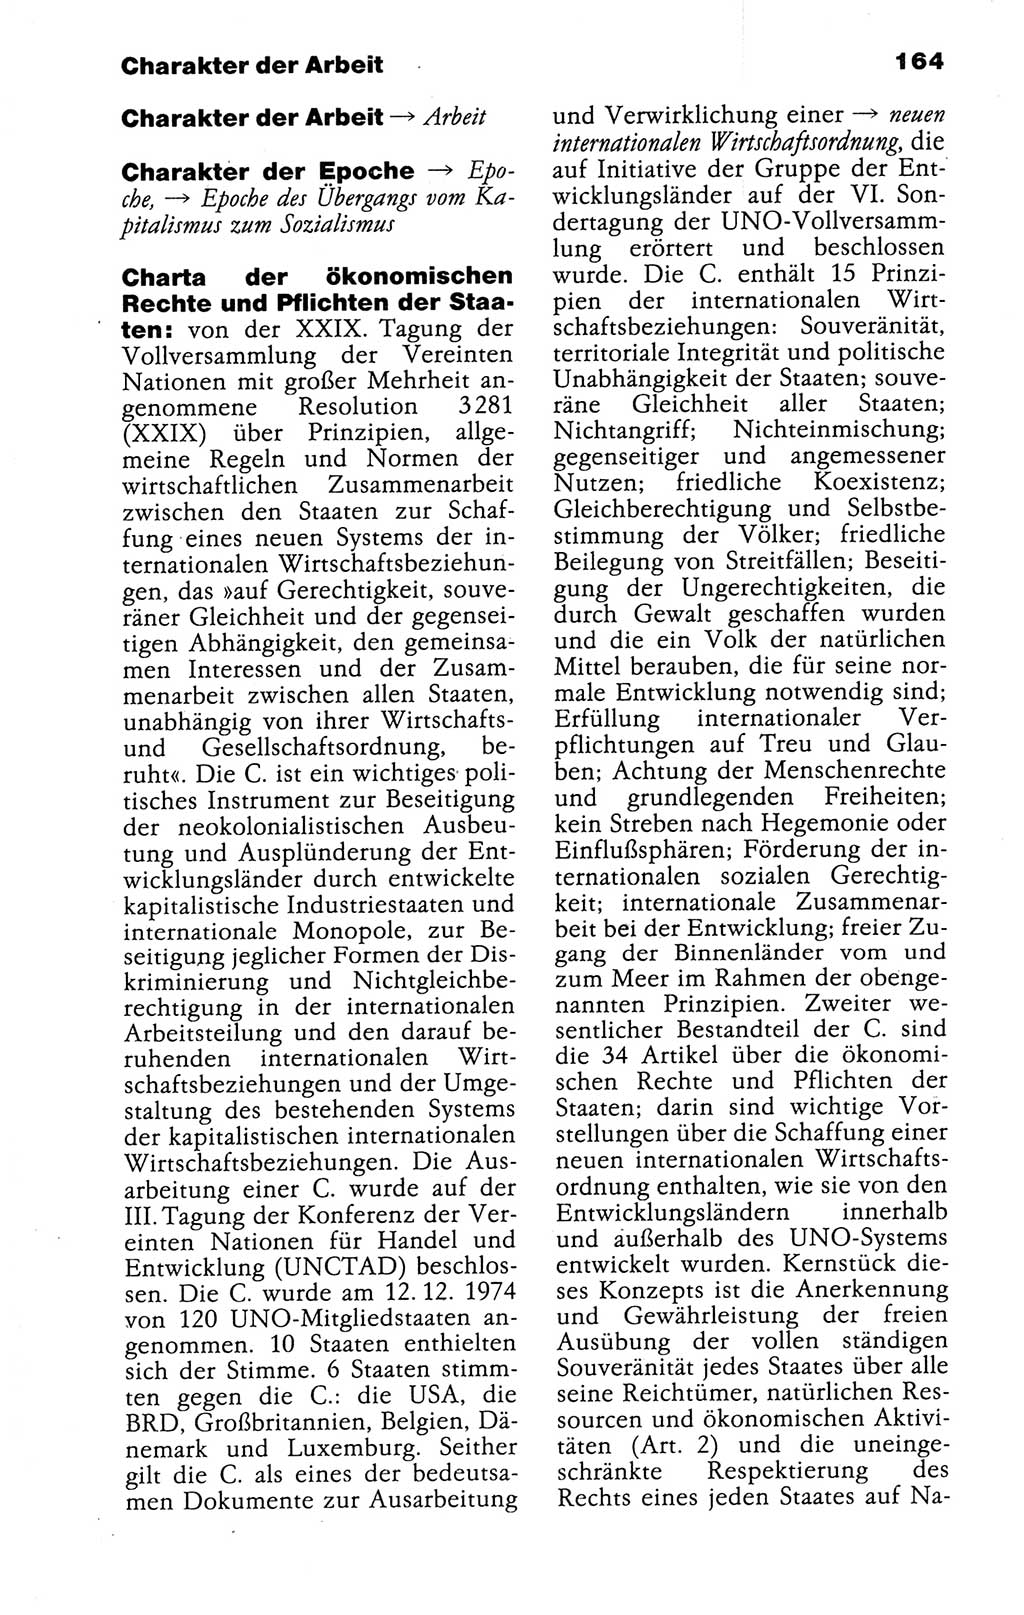 Kleines politisches Wörterbuch [Deutsche Demokratische Republik (DDR)] 1988, Seite 164 (Kl. pol. Wb. DDR 1988, S. 164)